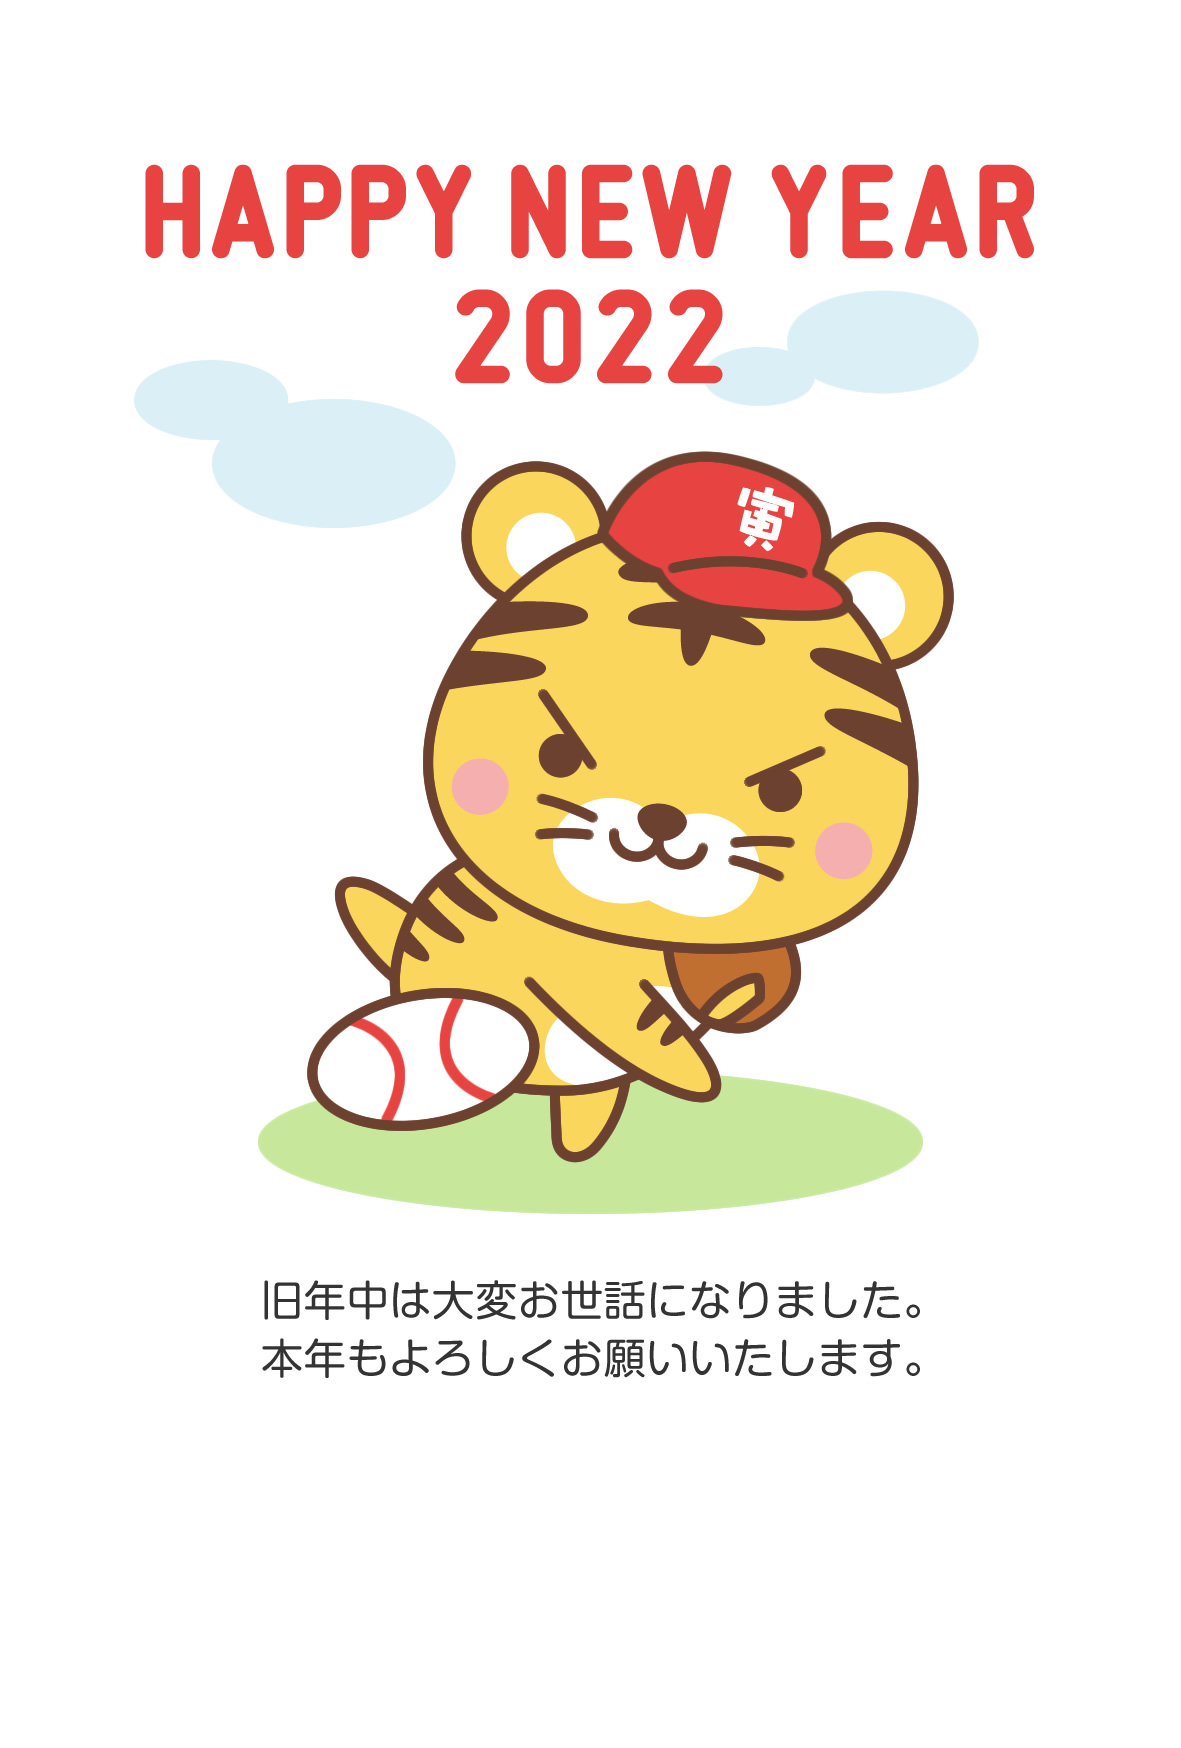 年賀状22無料テンプレート 野球のピッチングをするかわいいトラ